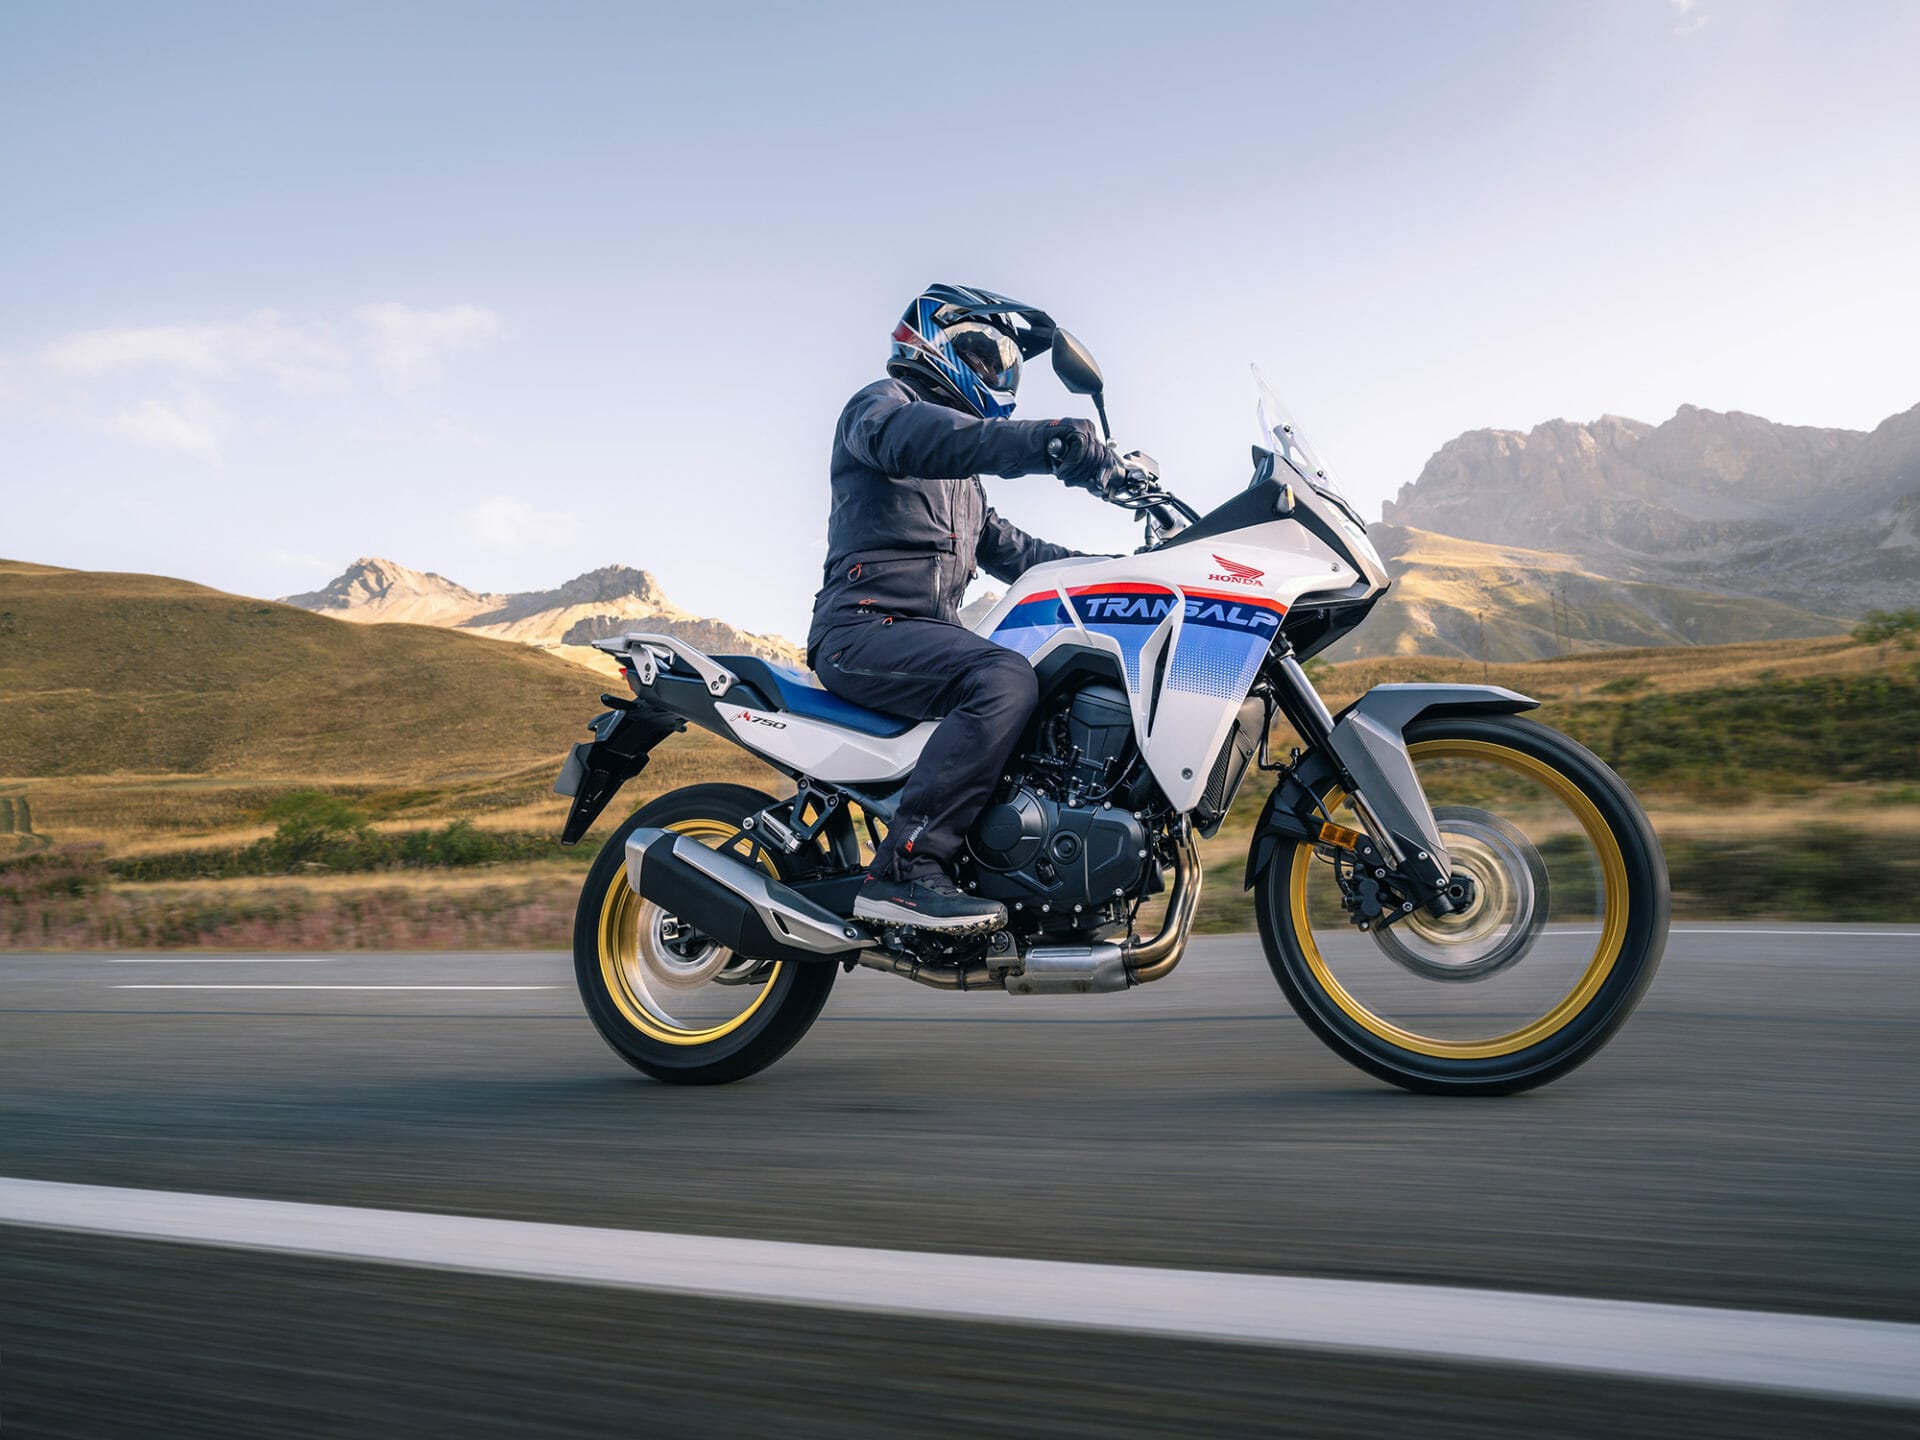 Honda XL750 Transalp - MOTORCYCLES.NEWS